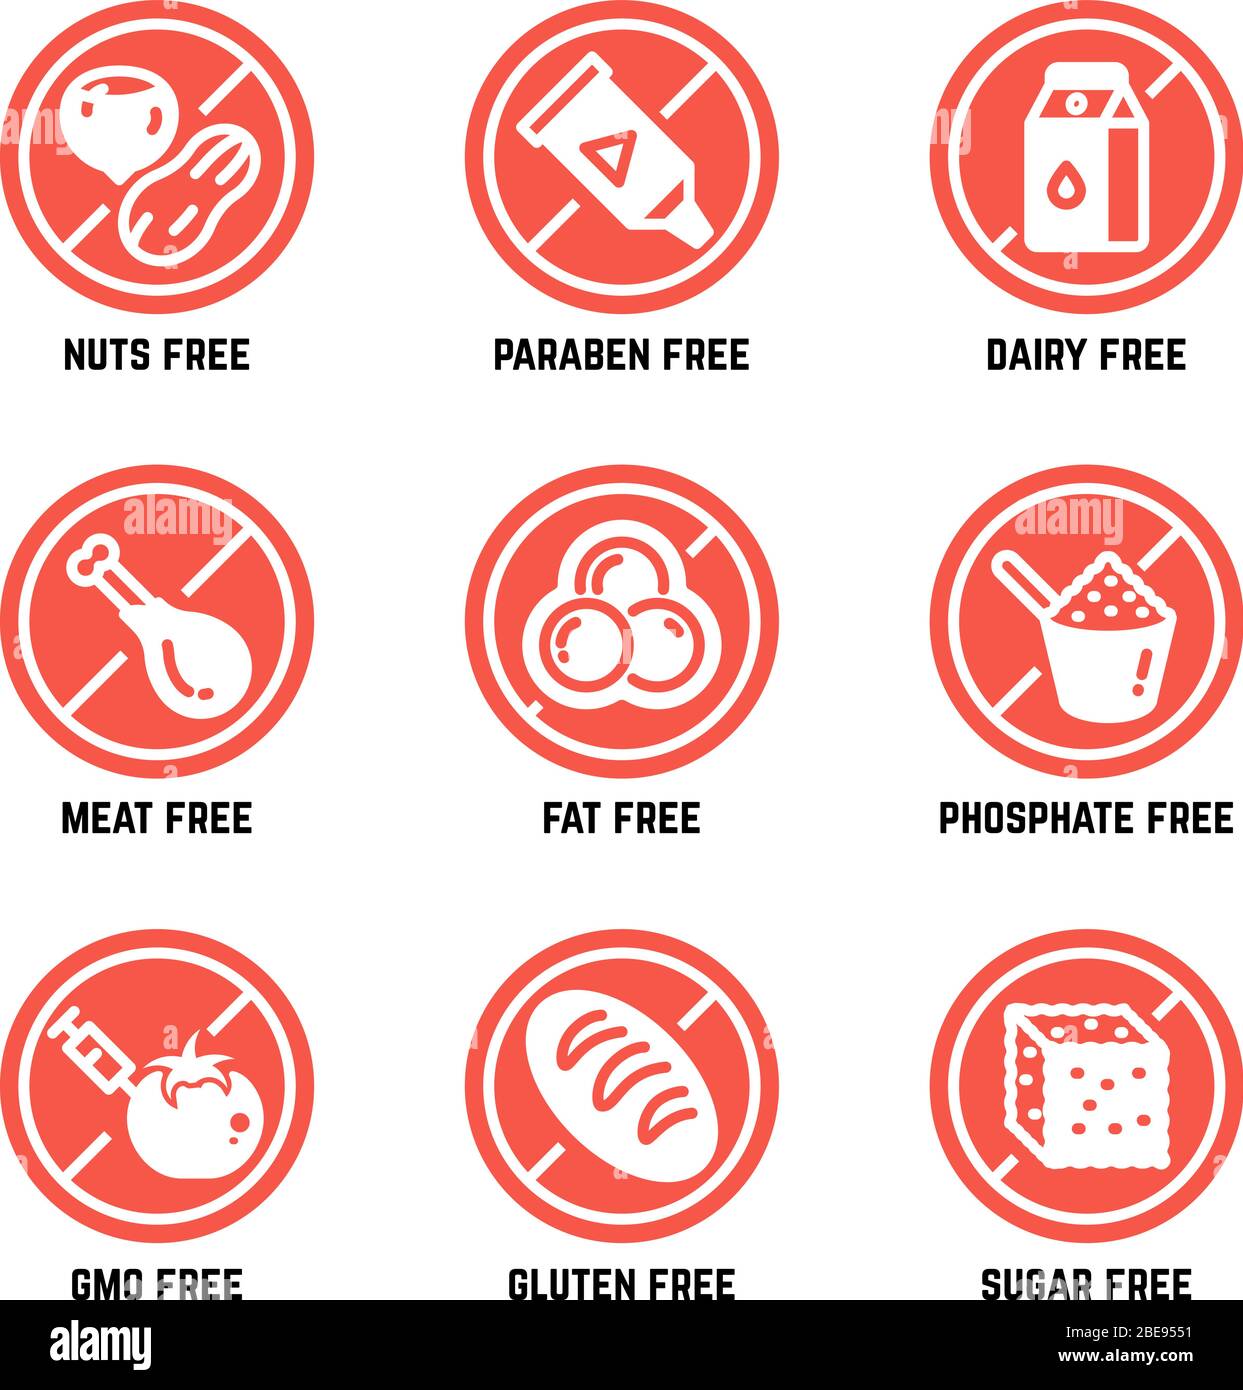 Symbole für die Ernährung von Lebensmitteln. GVO frei, kein Gluten, zuckerfrei und Allergie Vektor-Symbole gesetzt. Kein Zucker und Gluten, Verbot gvo und Phosphat Illustration Stock Vektor